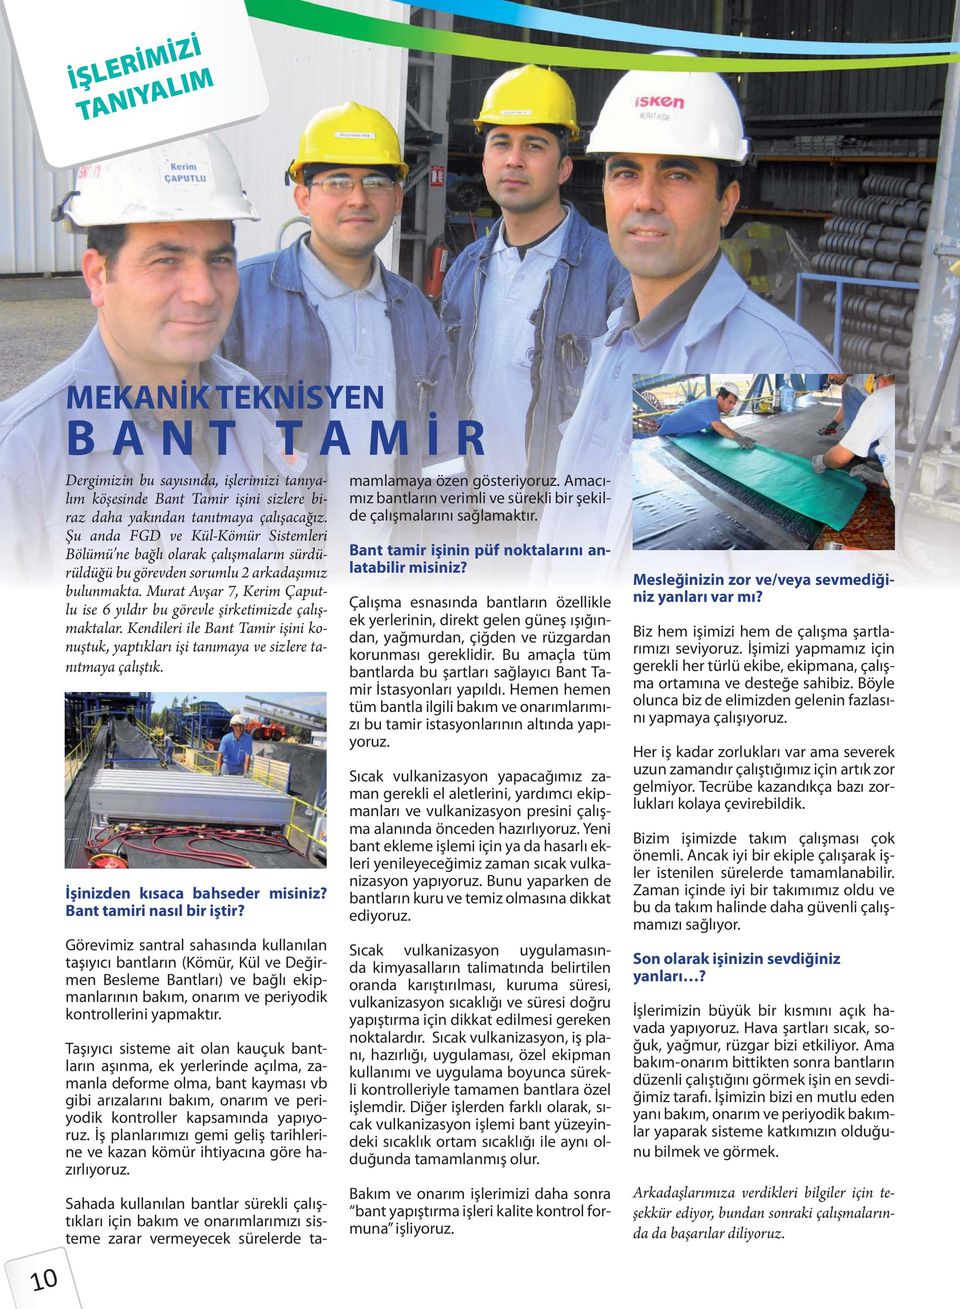 Murat Avşar 7, Kerim Çaputlu ise 6 yıldır bu görevle şirketimizde çalışmaktalar. Kendileri ile Bant Tamir işini konuştuk, yaptıkları işi tanımaya ve sizlere tanıtmaya çalıştık.